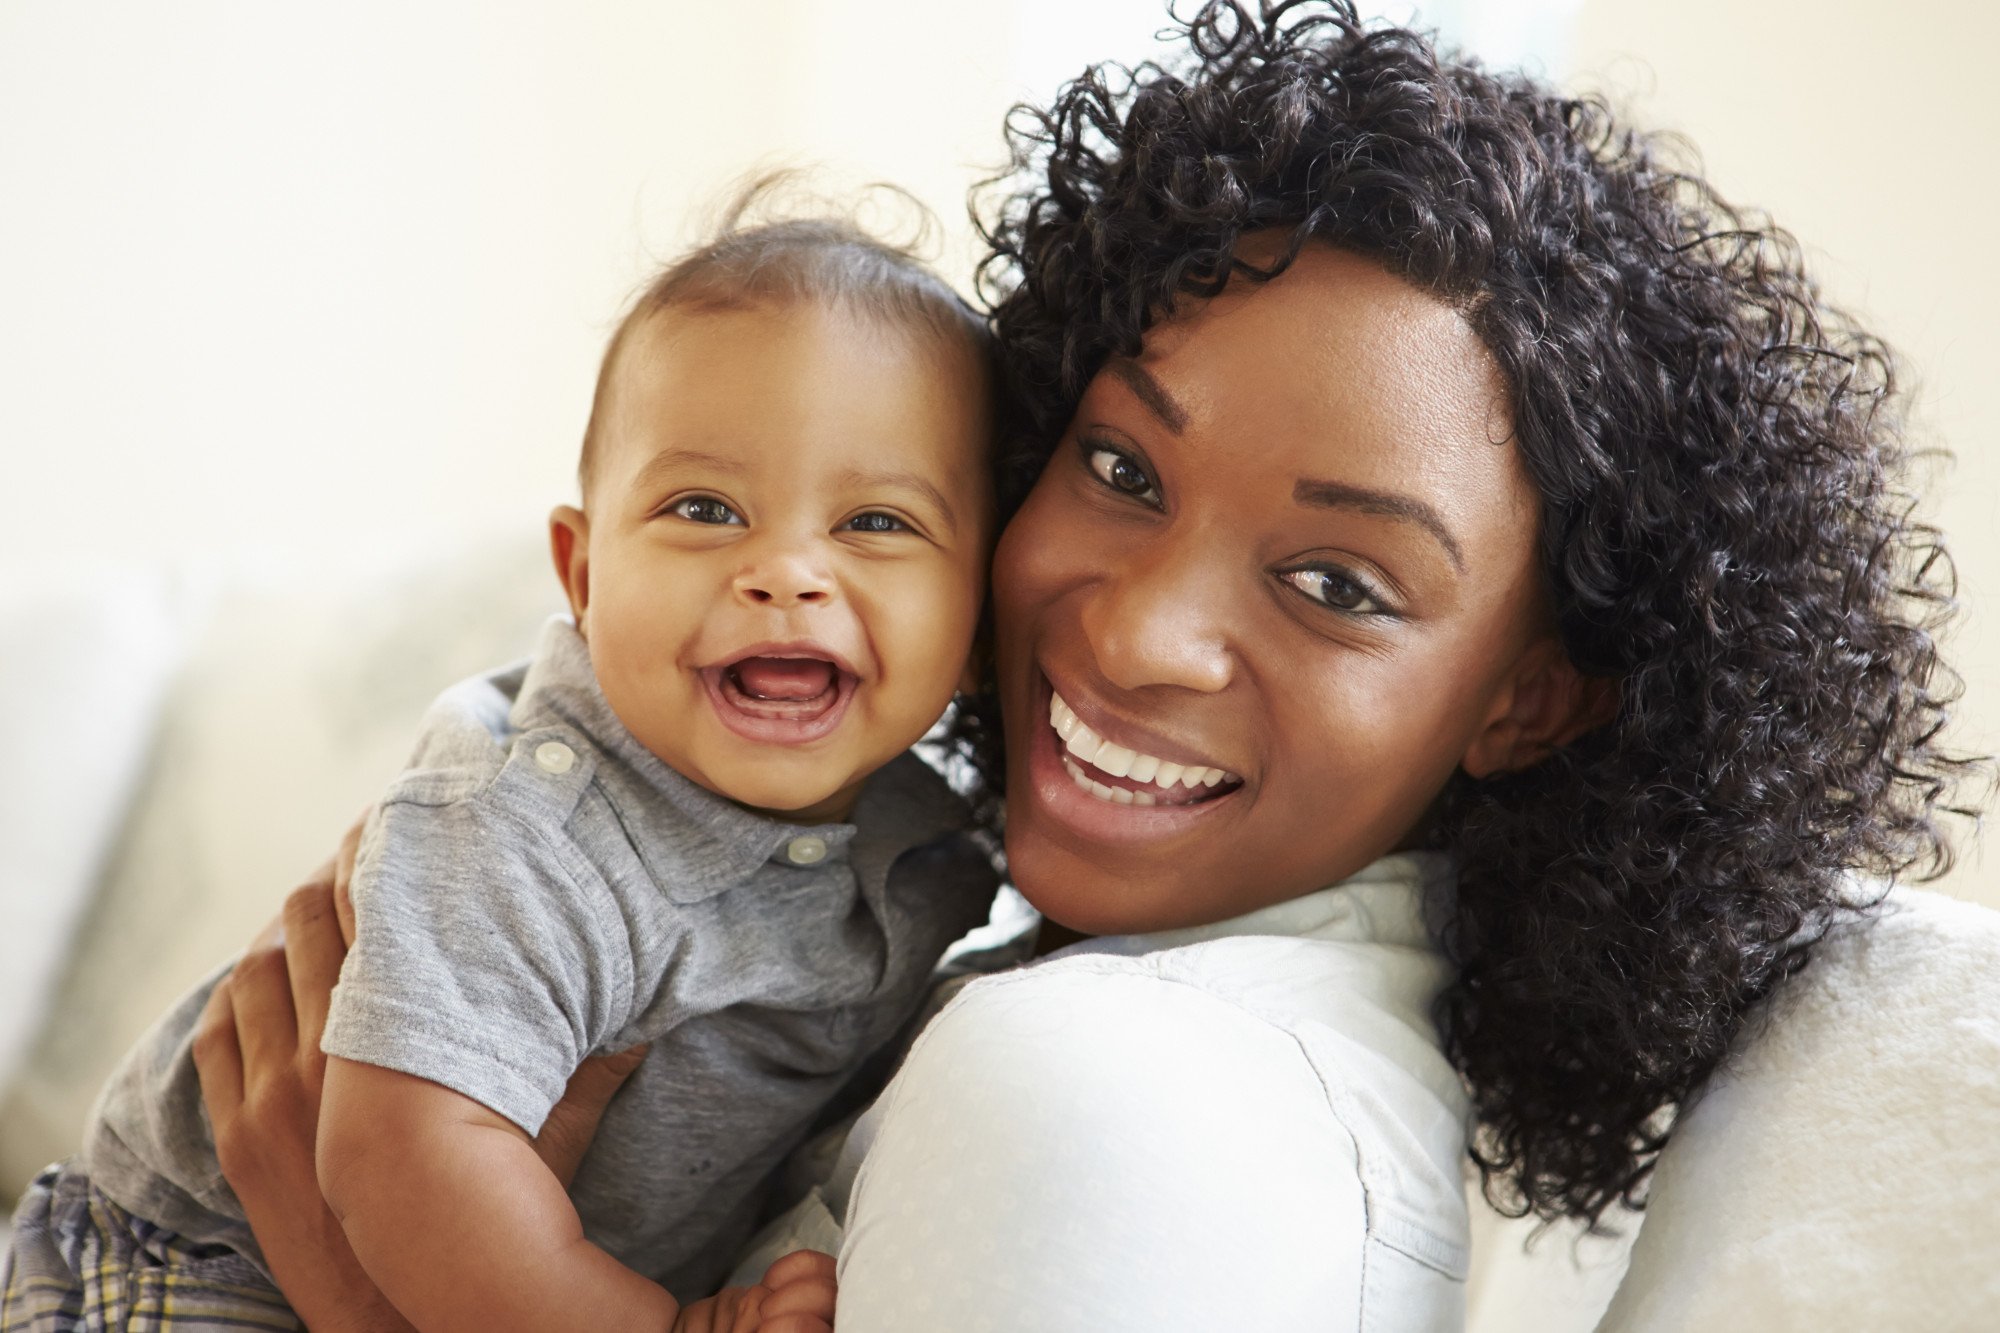 Nomes americanos masculinos: confira várias opções para o seu bebê